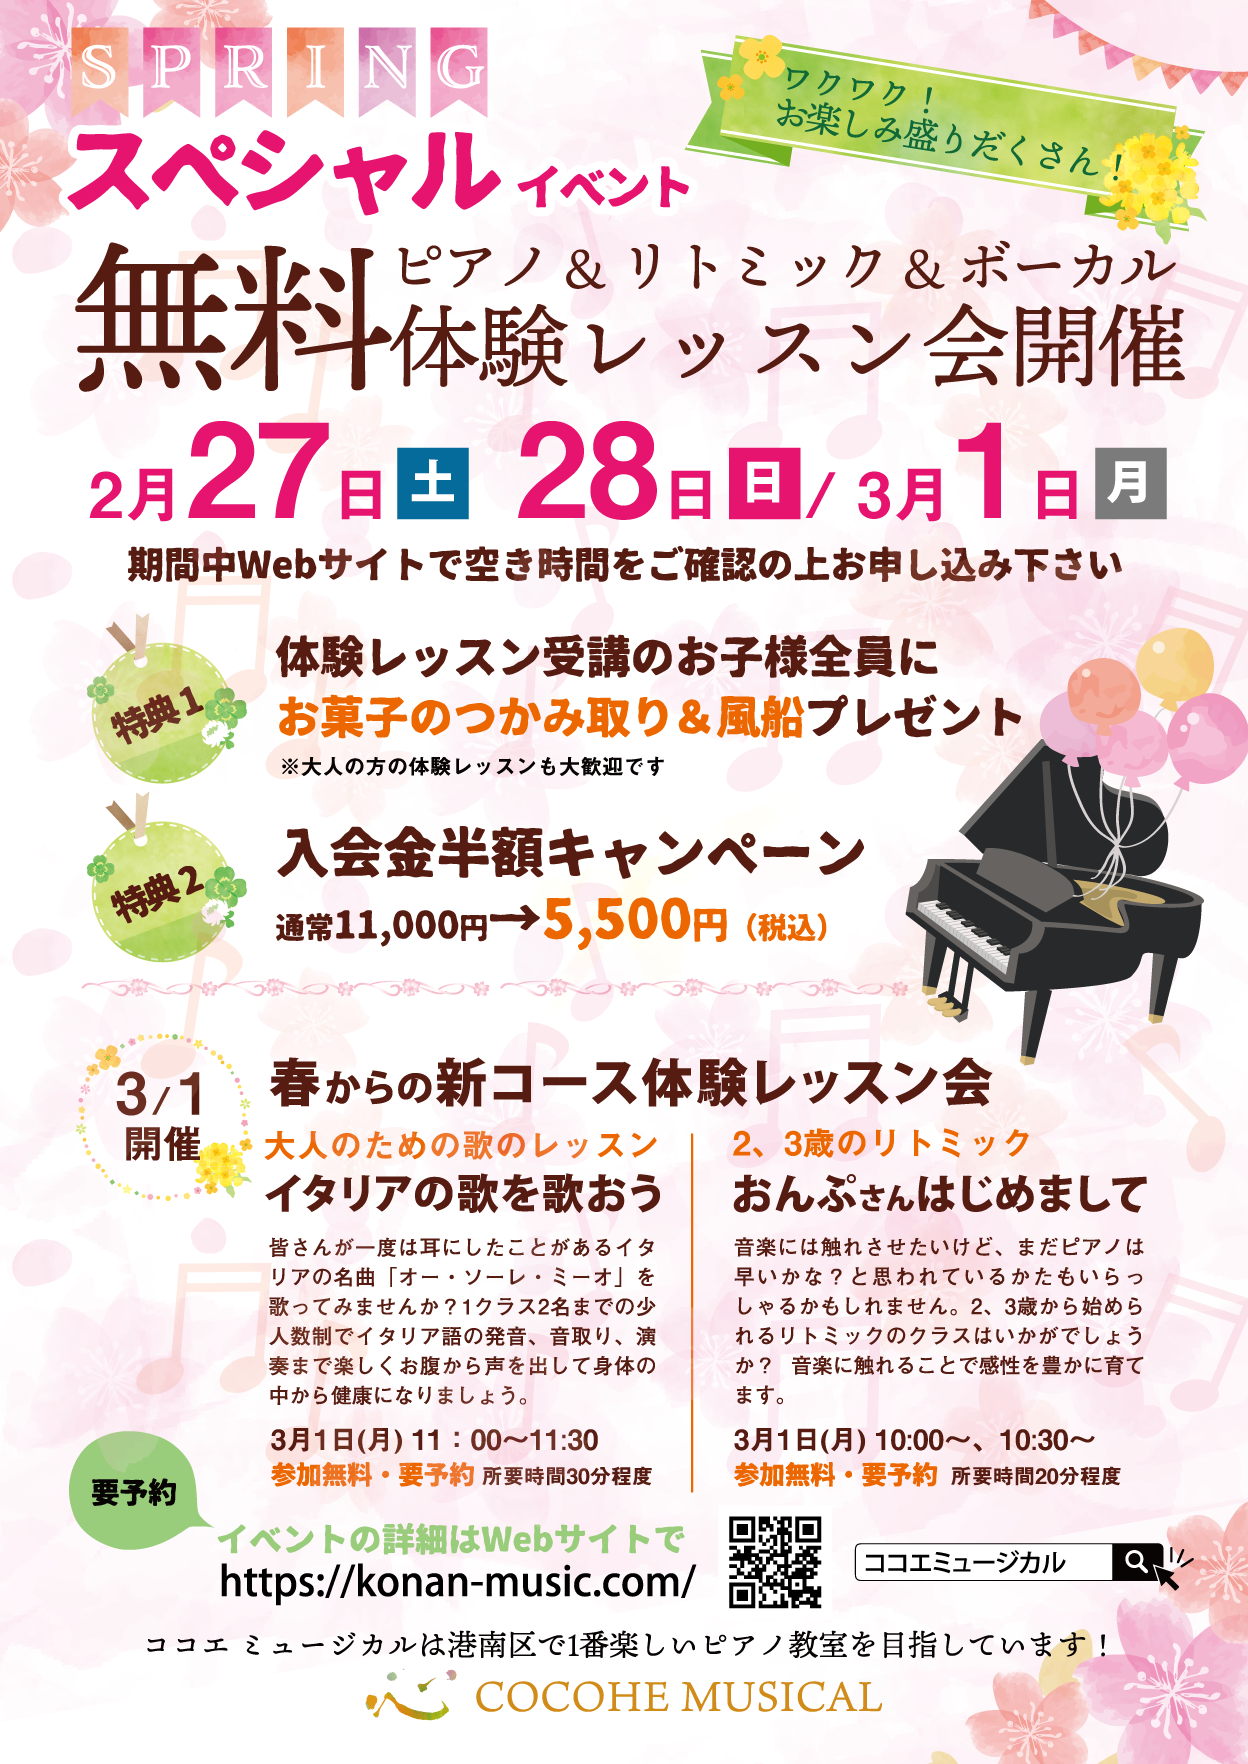 21 春のピアノ無料体験レッスン会を開催いたします 横浜市港南区 港南中央駅 ピアノ教室 ココエ ミュージカル ピアノも歌 も学べる楽しい音楽教室